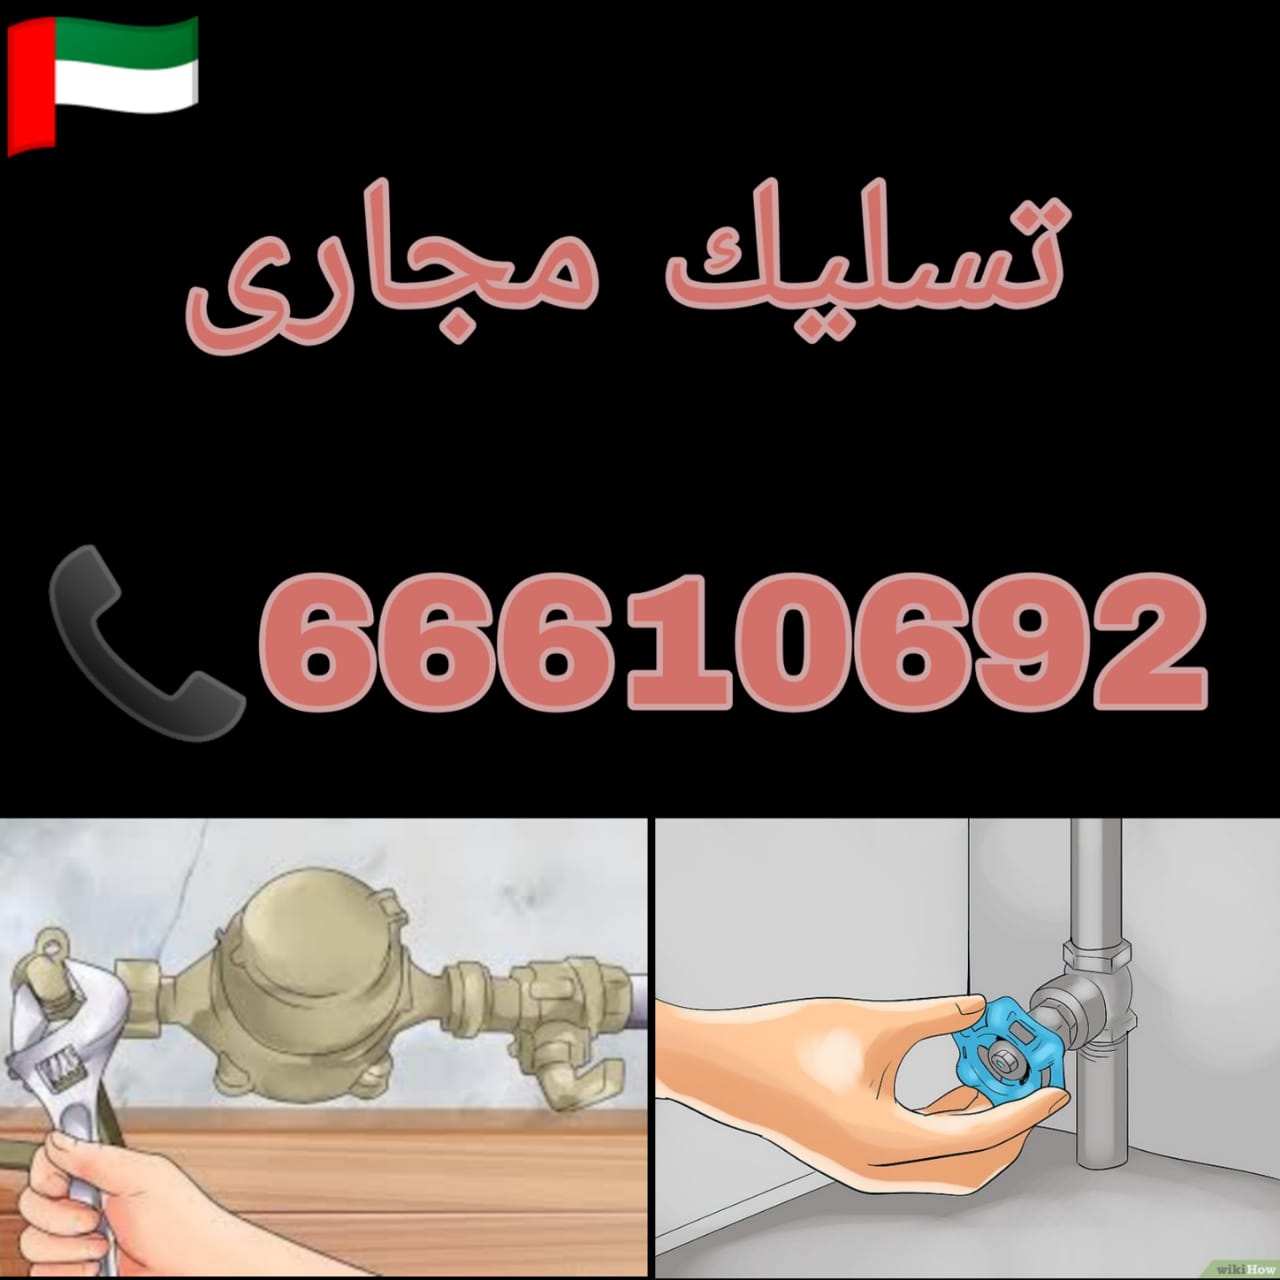 تنكر سحب مجاري الكويت/ 66610692 / صيانة وتركيب فني صحي الكويت